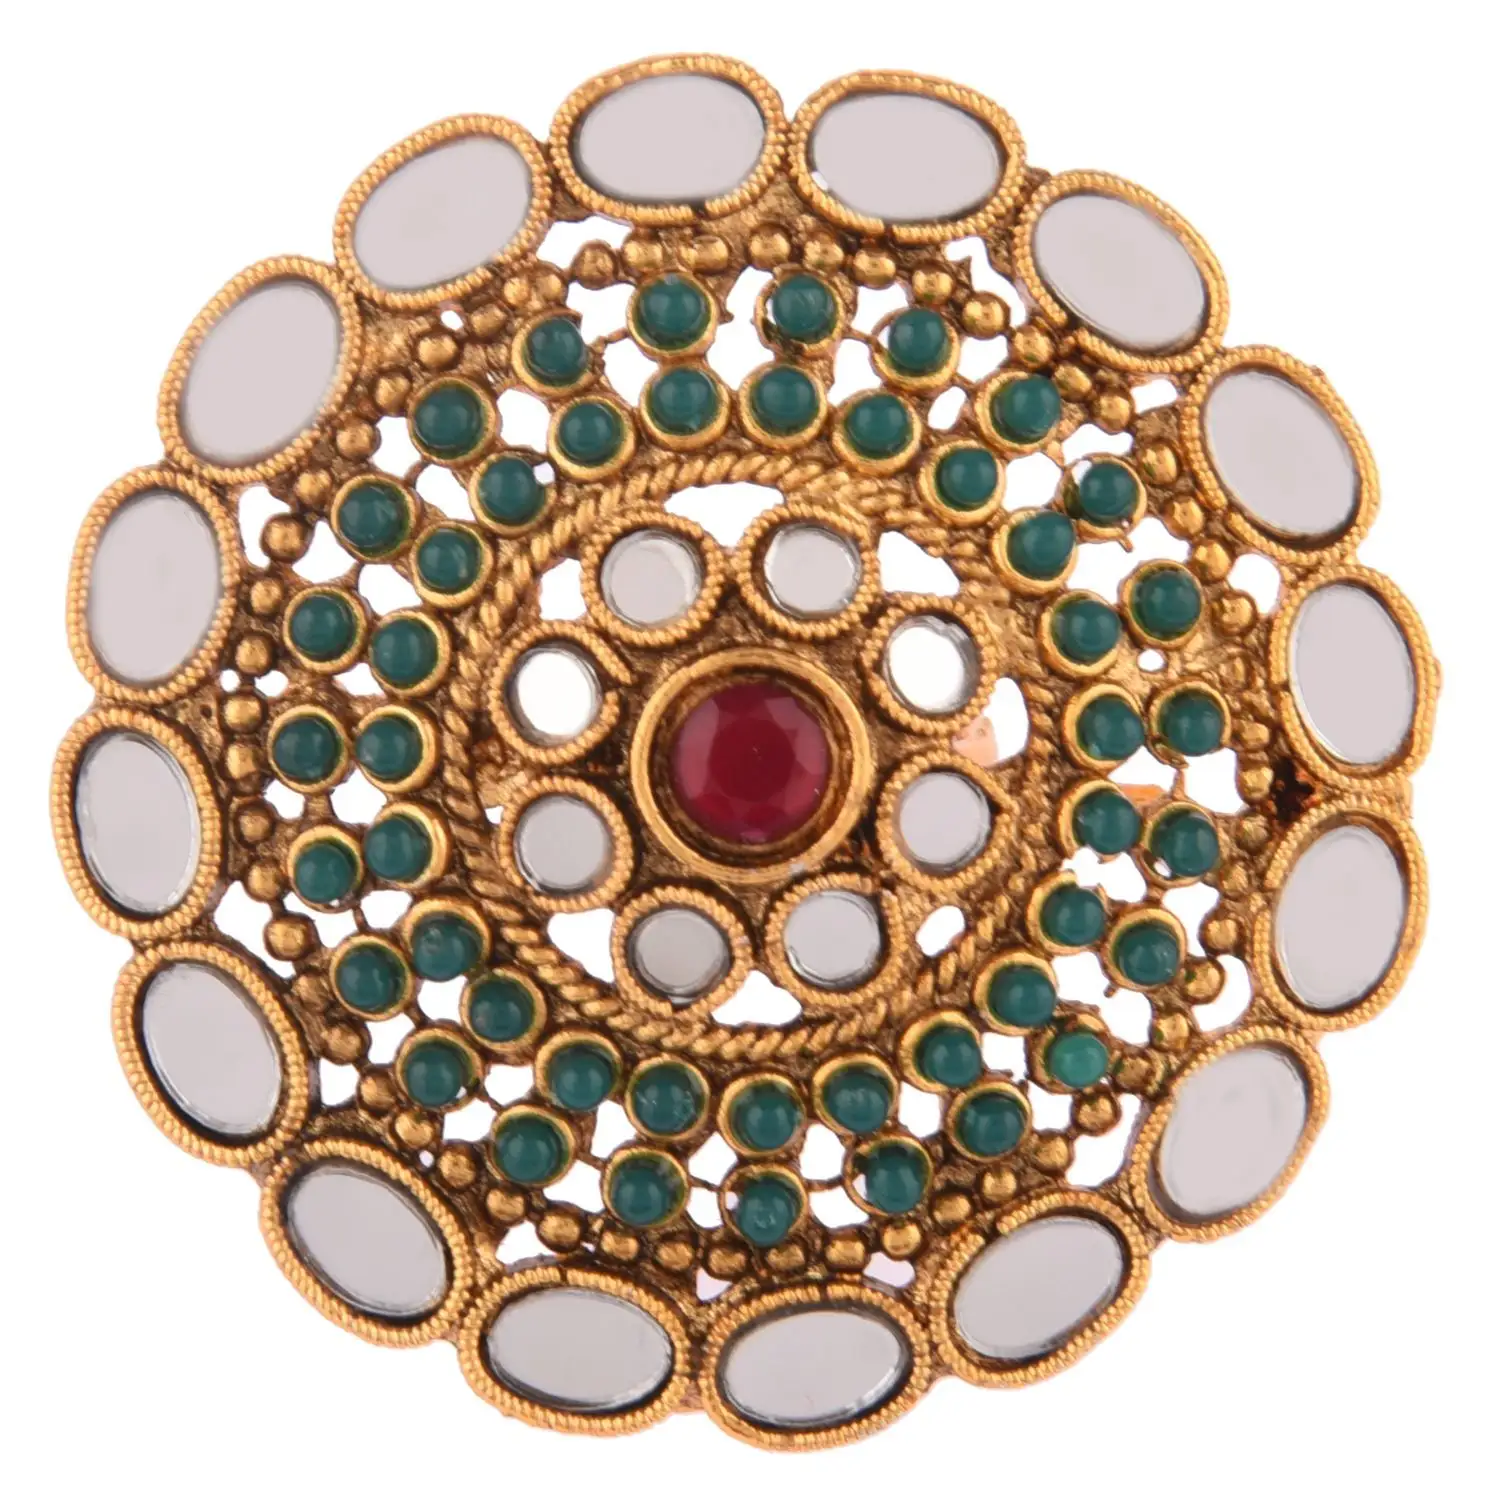 مجوهرات هندية من أحجار زجاجية مرصعة باللؤلؤ قابلة للتعديل ، خواتم بأصبع كبيرة من المجوهرات المصنعة بالجملة ، باللون الأخضر